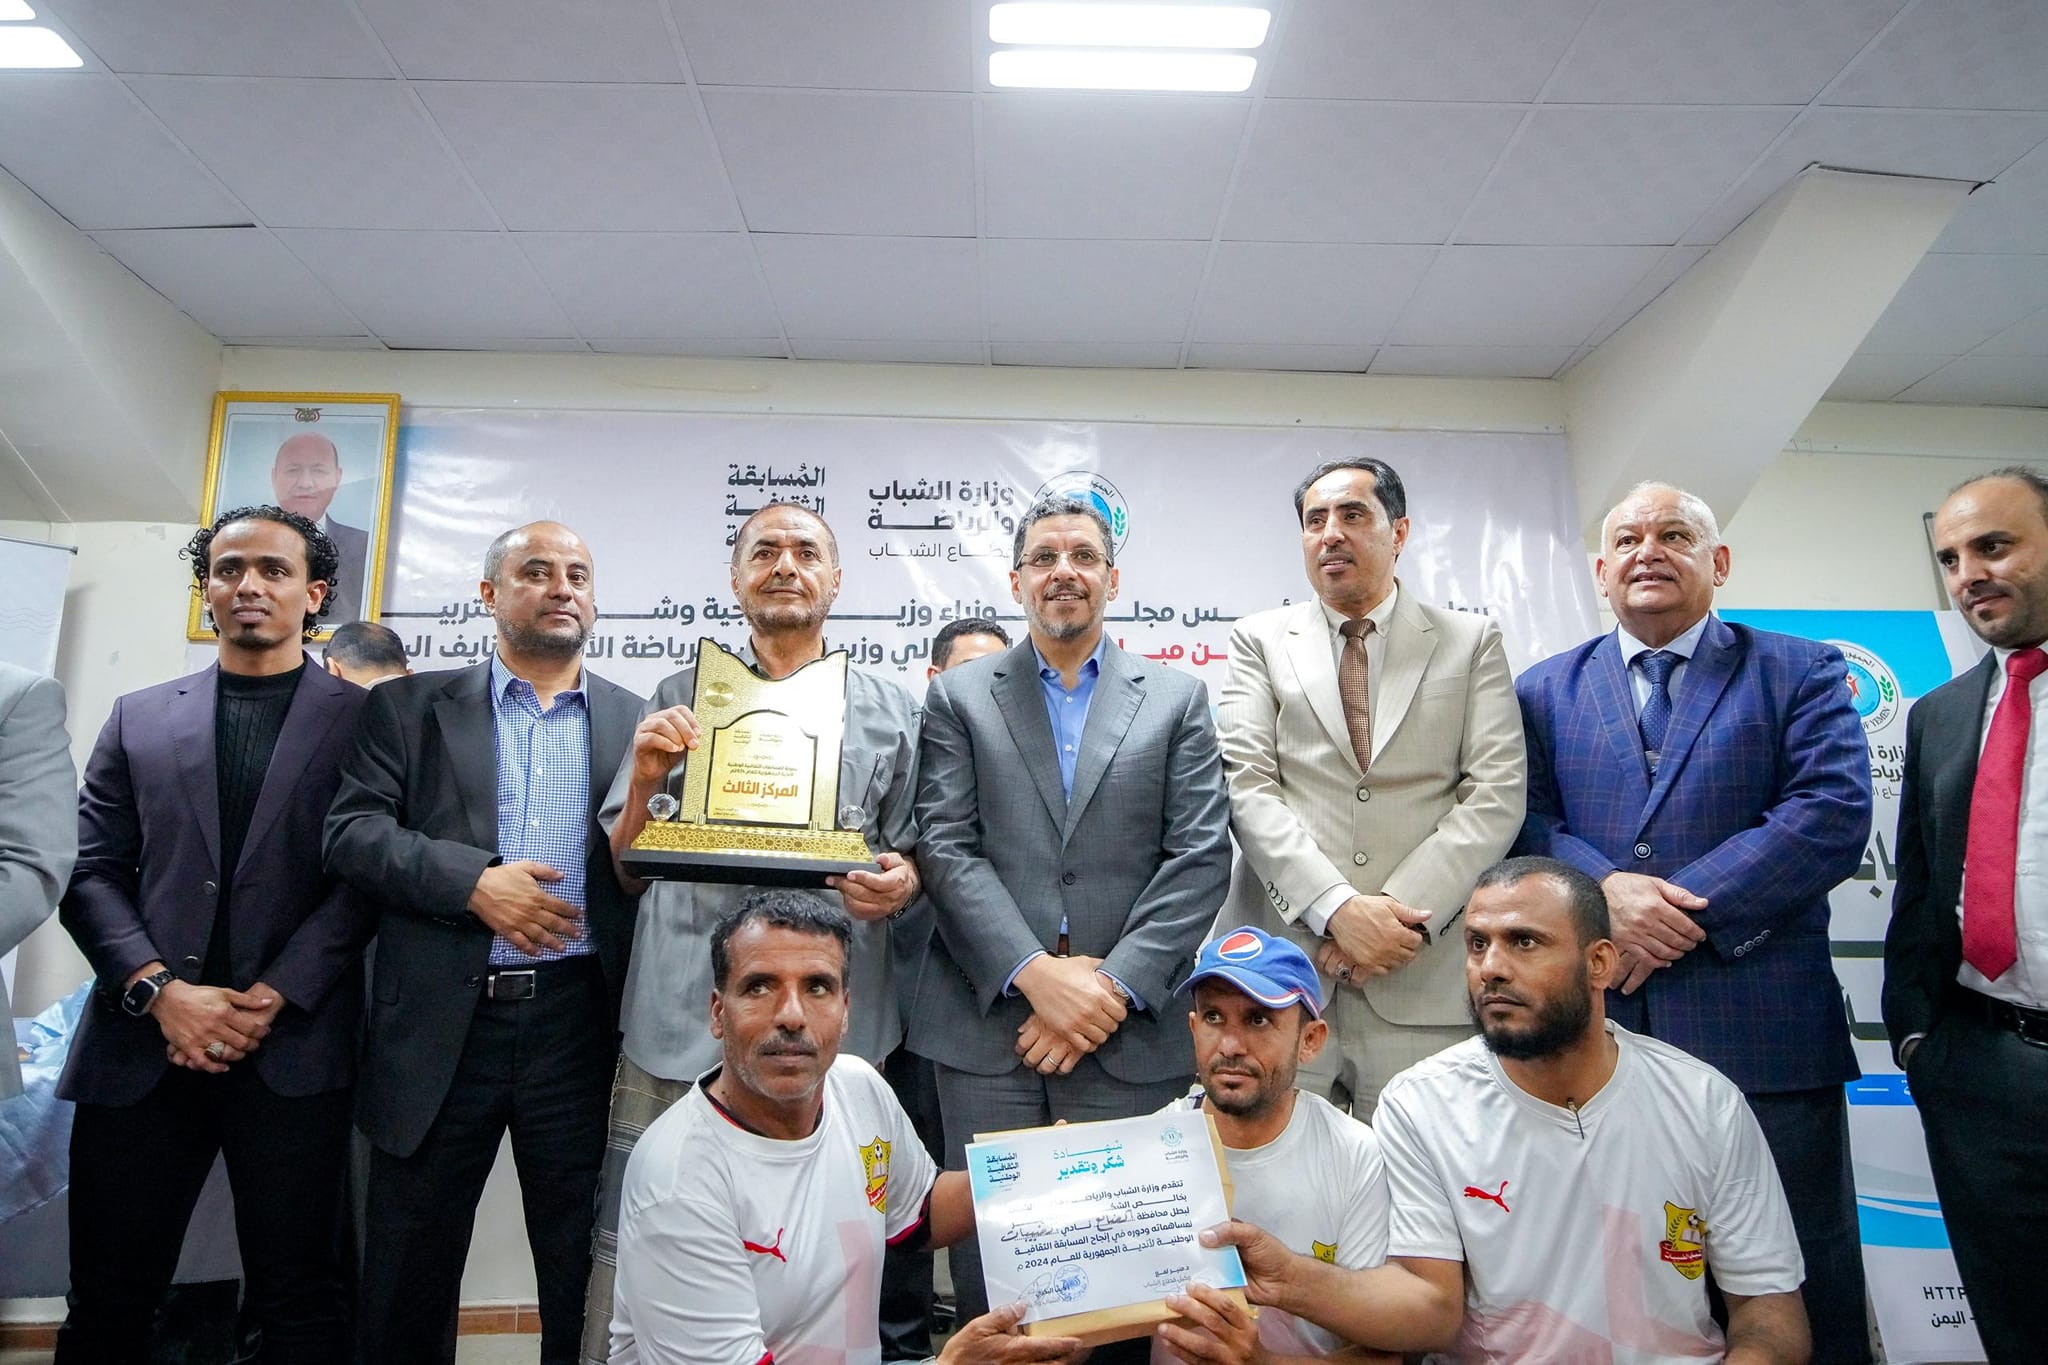 الحكومة اليمنية تكرم المشاركين في المسابقة الثقافية الوطنية للأندية بـ10 ملاين ريال